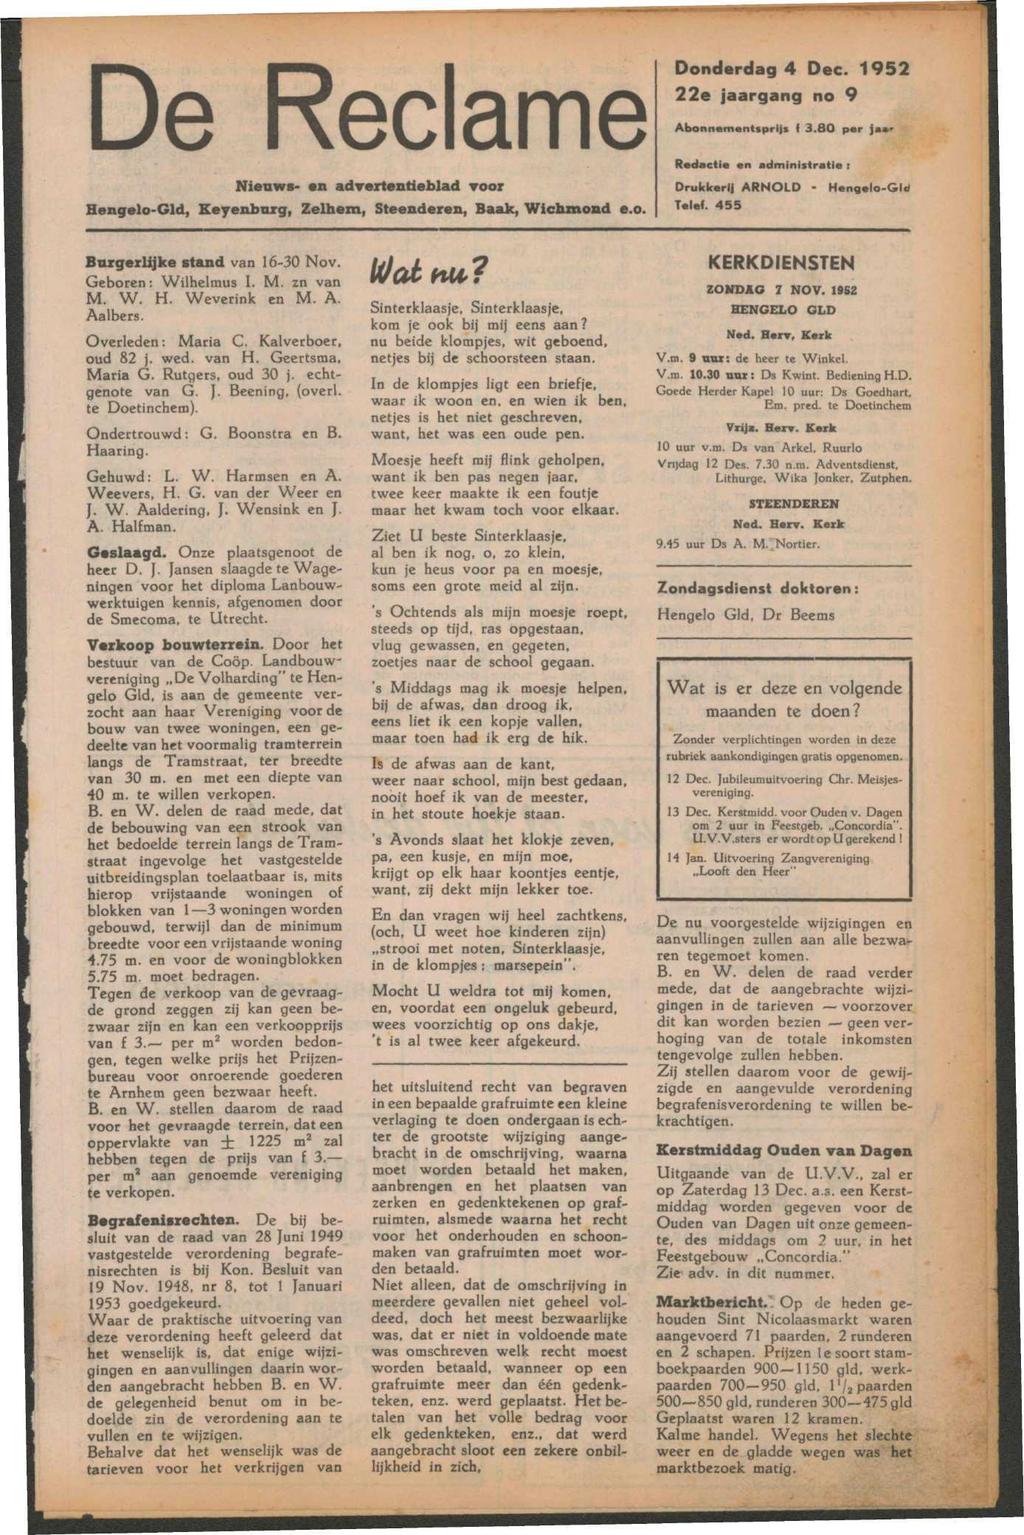 De Reclame Nieuws- en advertentieblad voor Hengelo-Gld, Keyenburg, Zelhem, Steenderen, Baak, Wichmond e.o. Donderdag 4 Dec. 1952 22e jaargang no 9 Abonnementsprijs l 3.